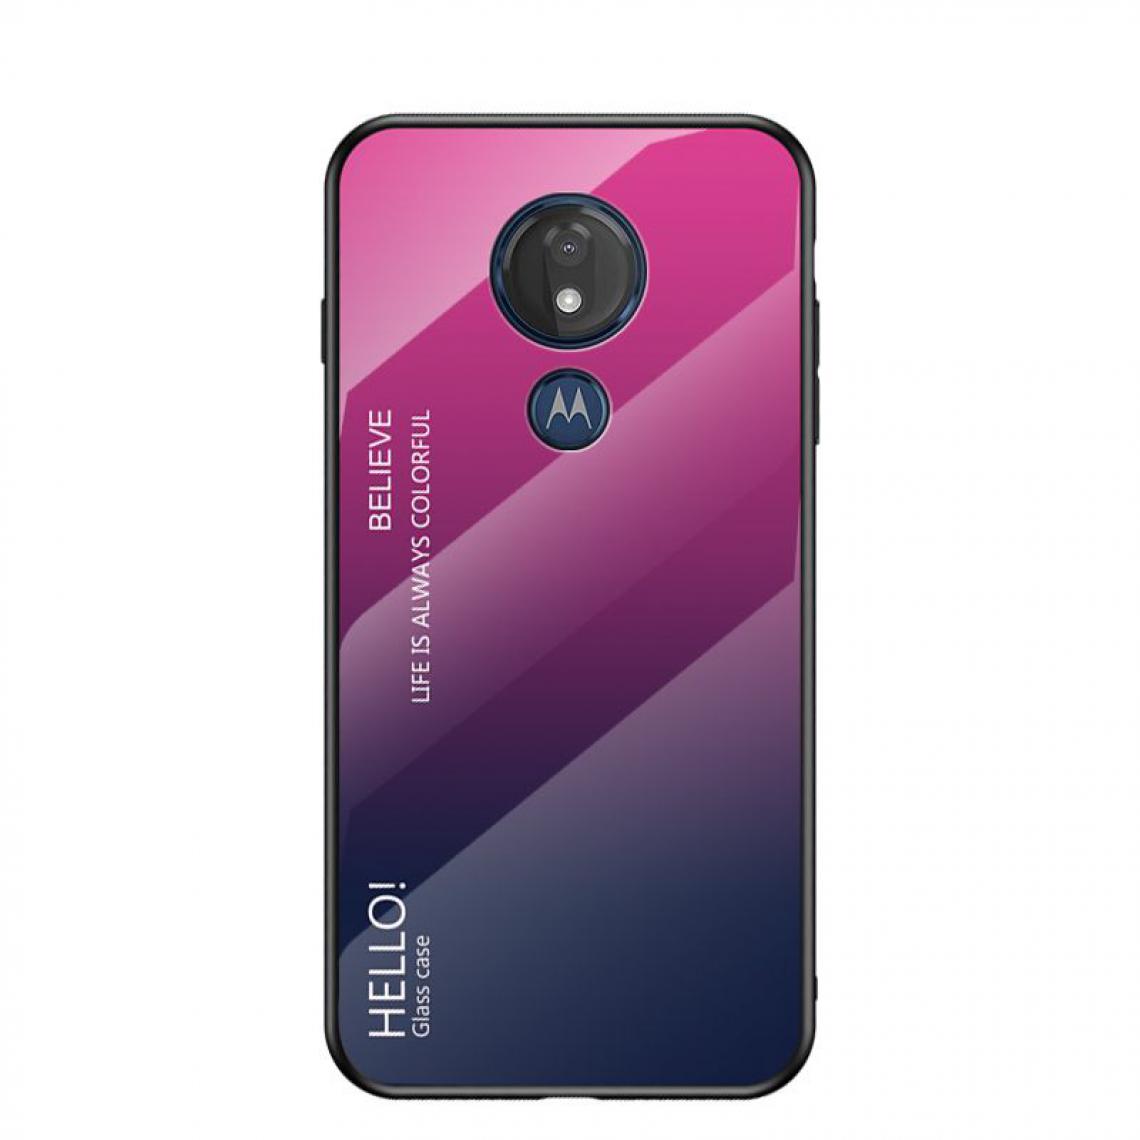 OtterBox - Housse Etui Coque de protection pour Moto G7 Play Arriere Rigide dégradé [Rose] - Coque, étui smartphone